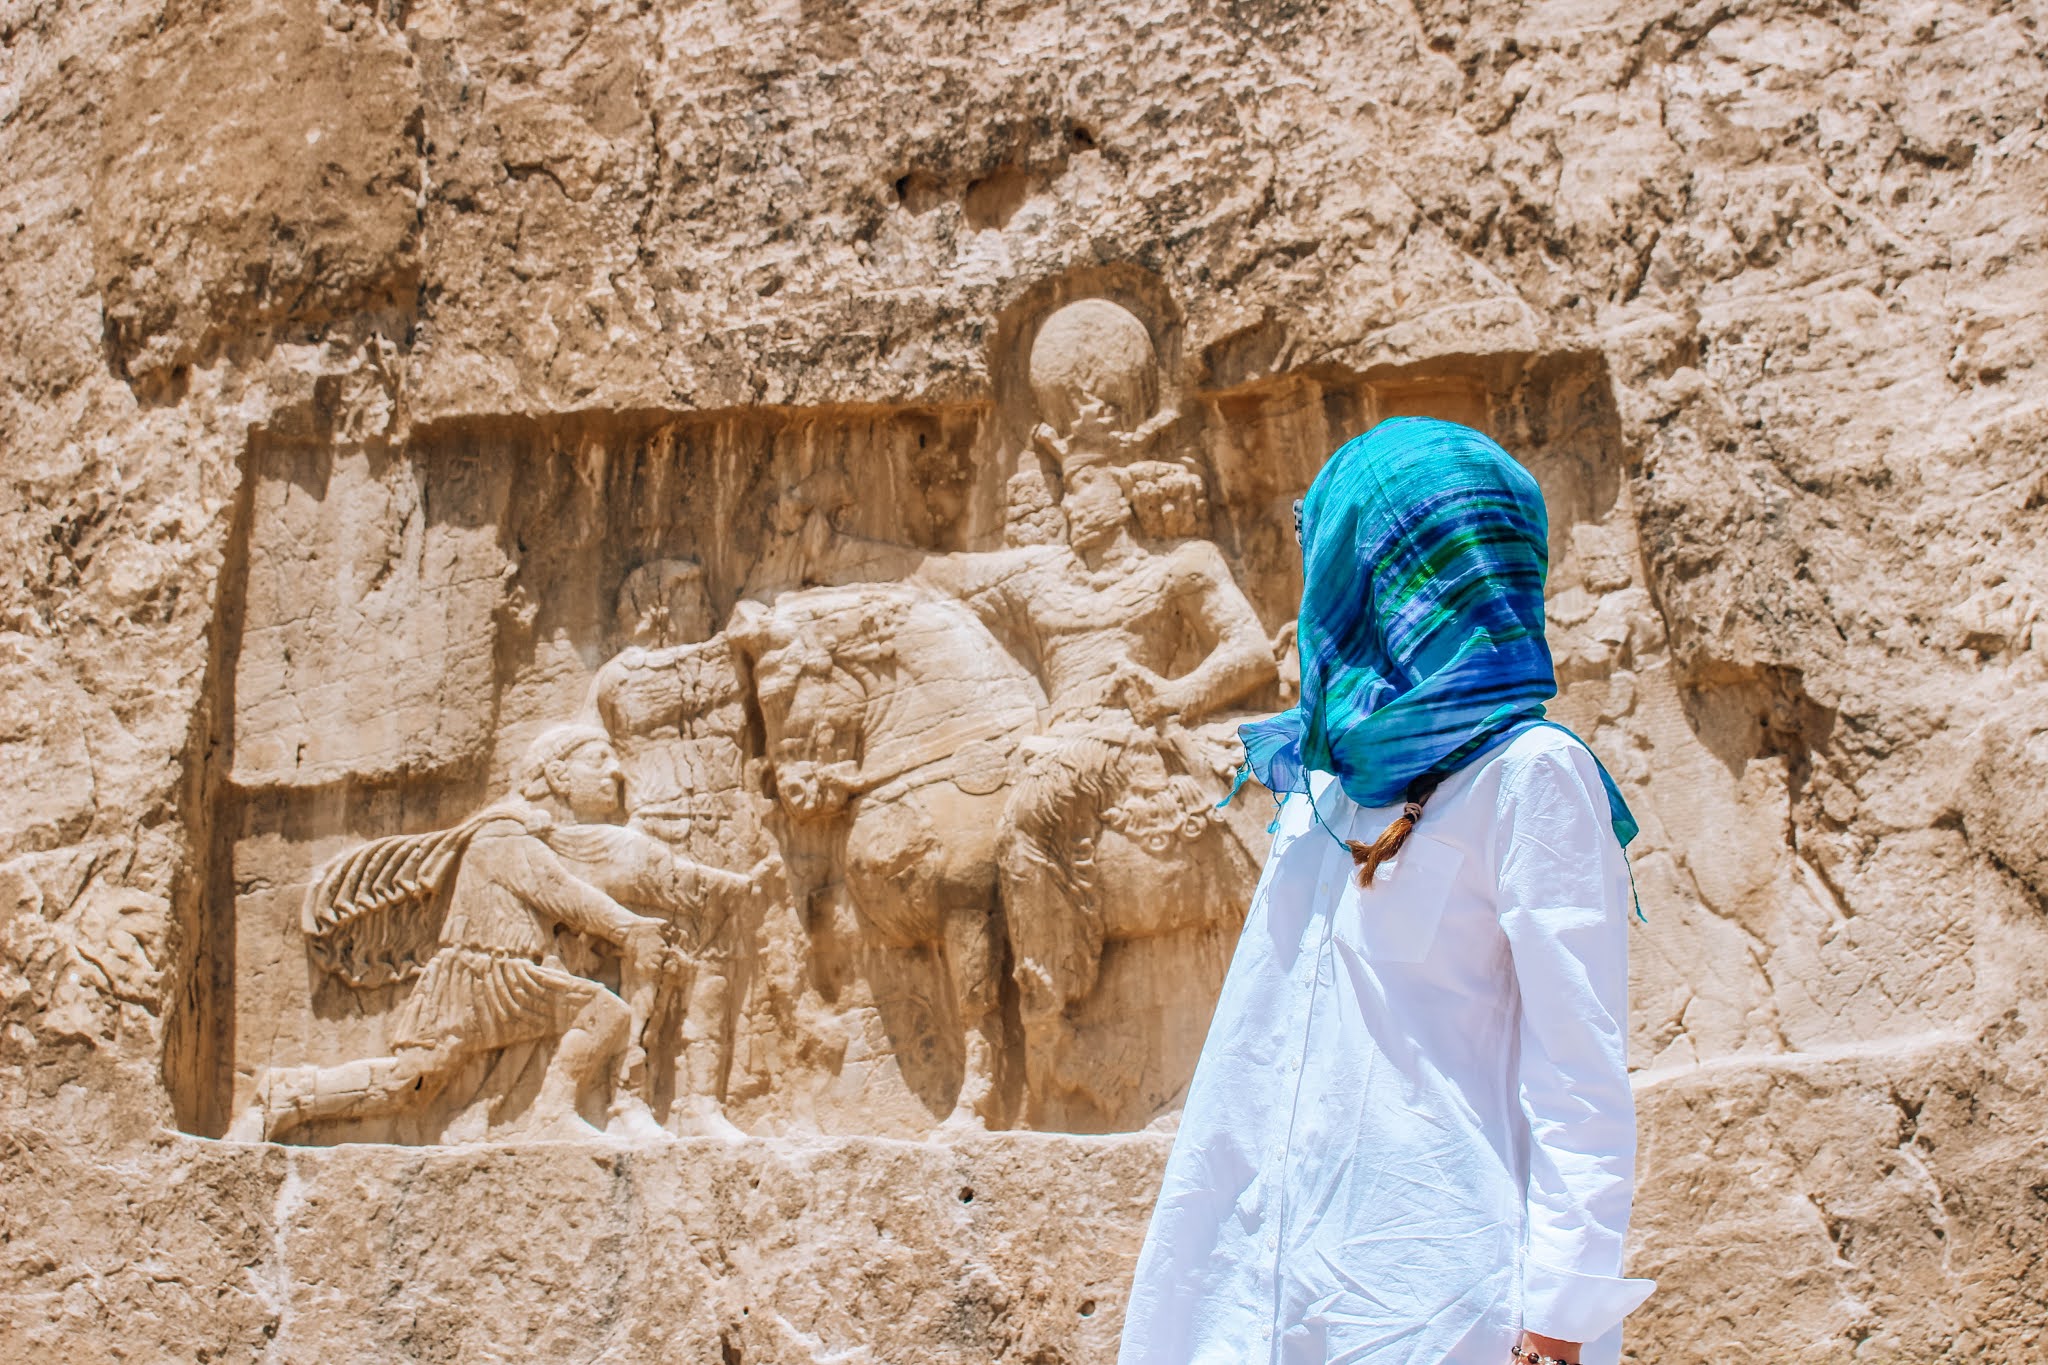 Malvina Dunder blog podróże, rozwój osobisty, relacje, Iran antyczne starożytne grobowce Nekropolis